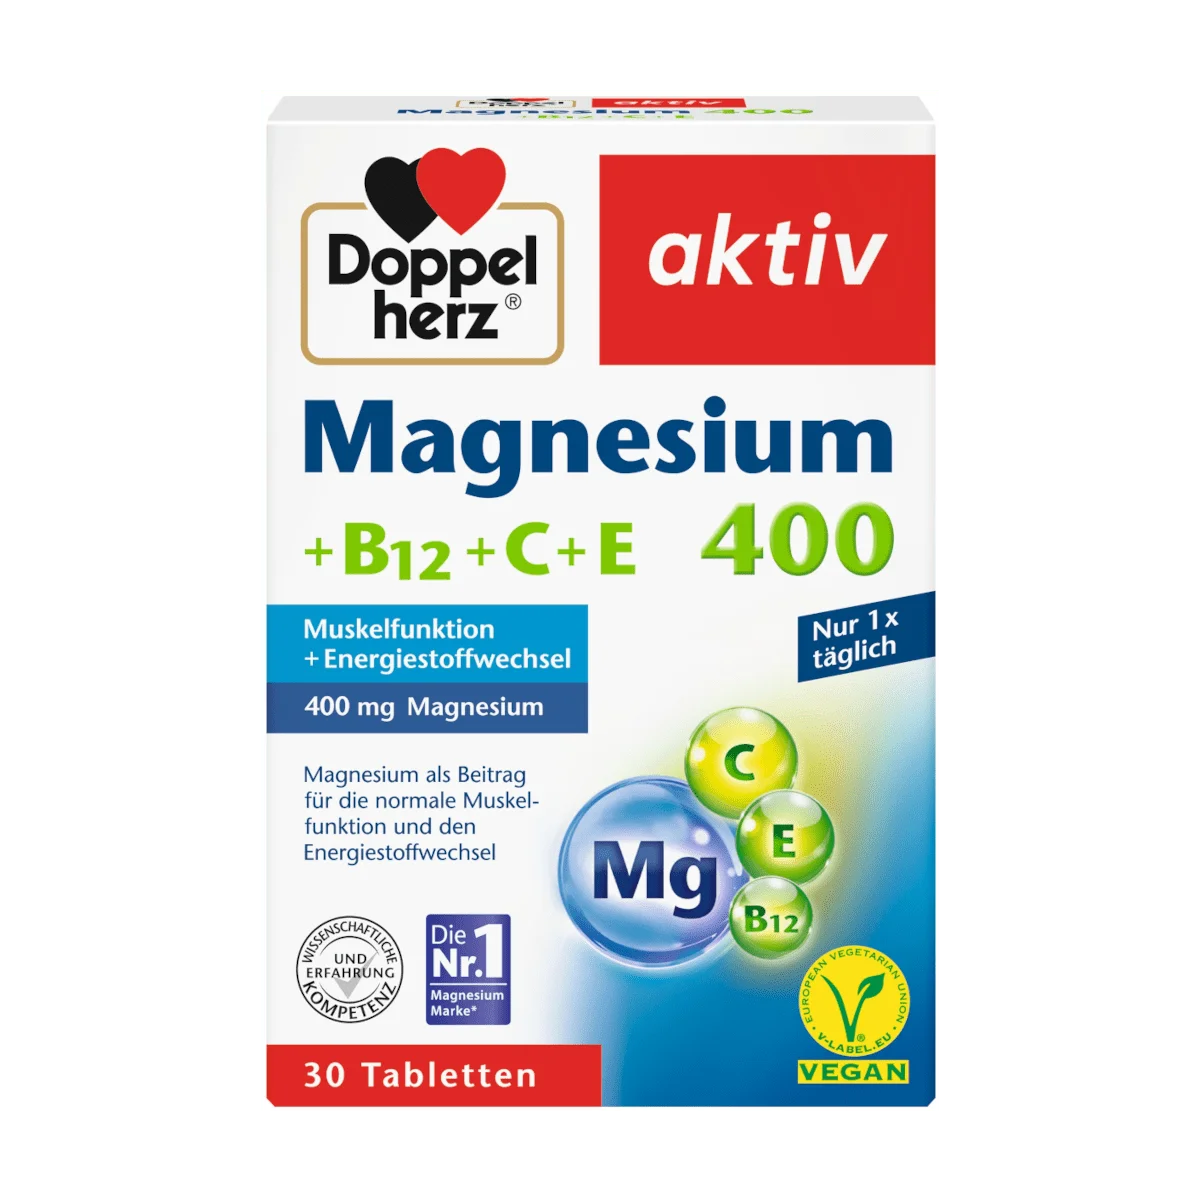 Doppelherz Magnesium 400 mg Vitamin B12 + C + E, 30 Tbl